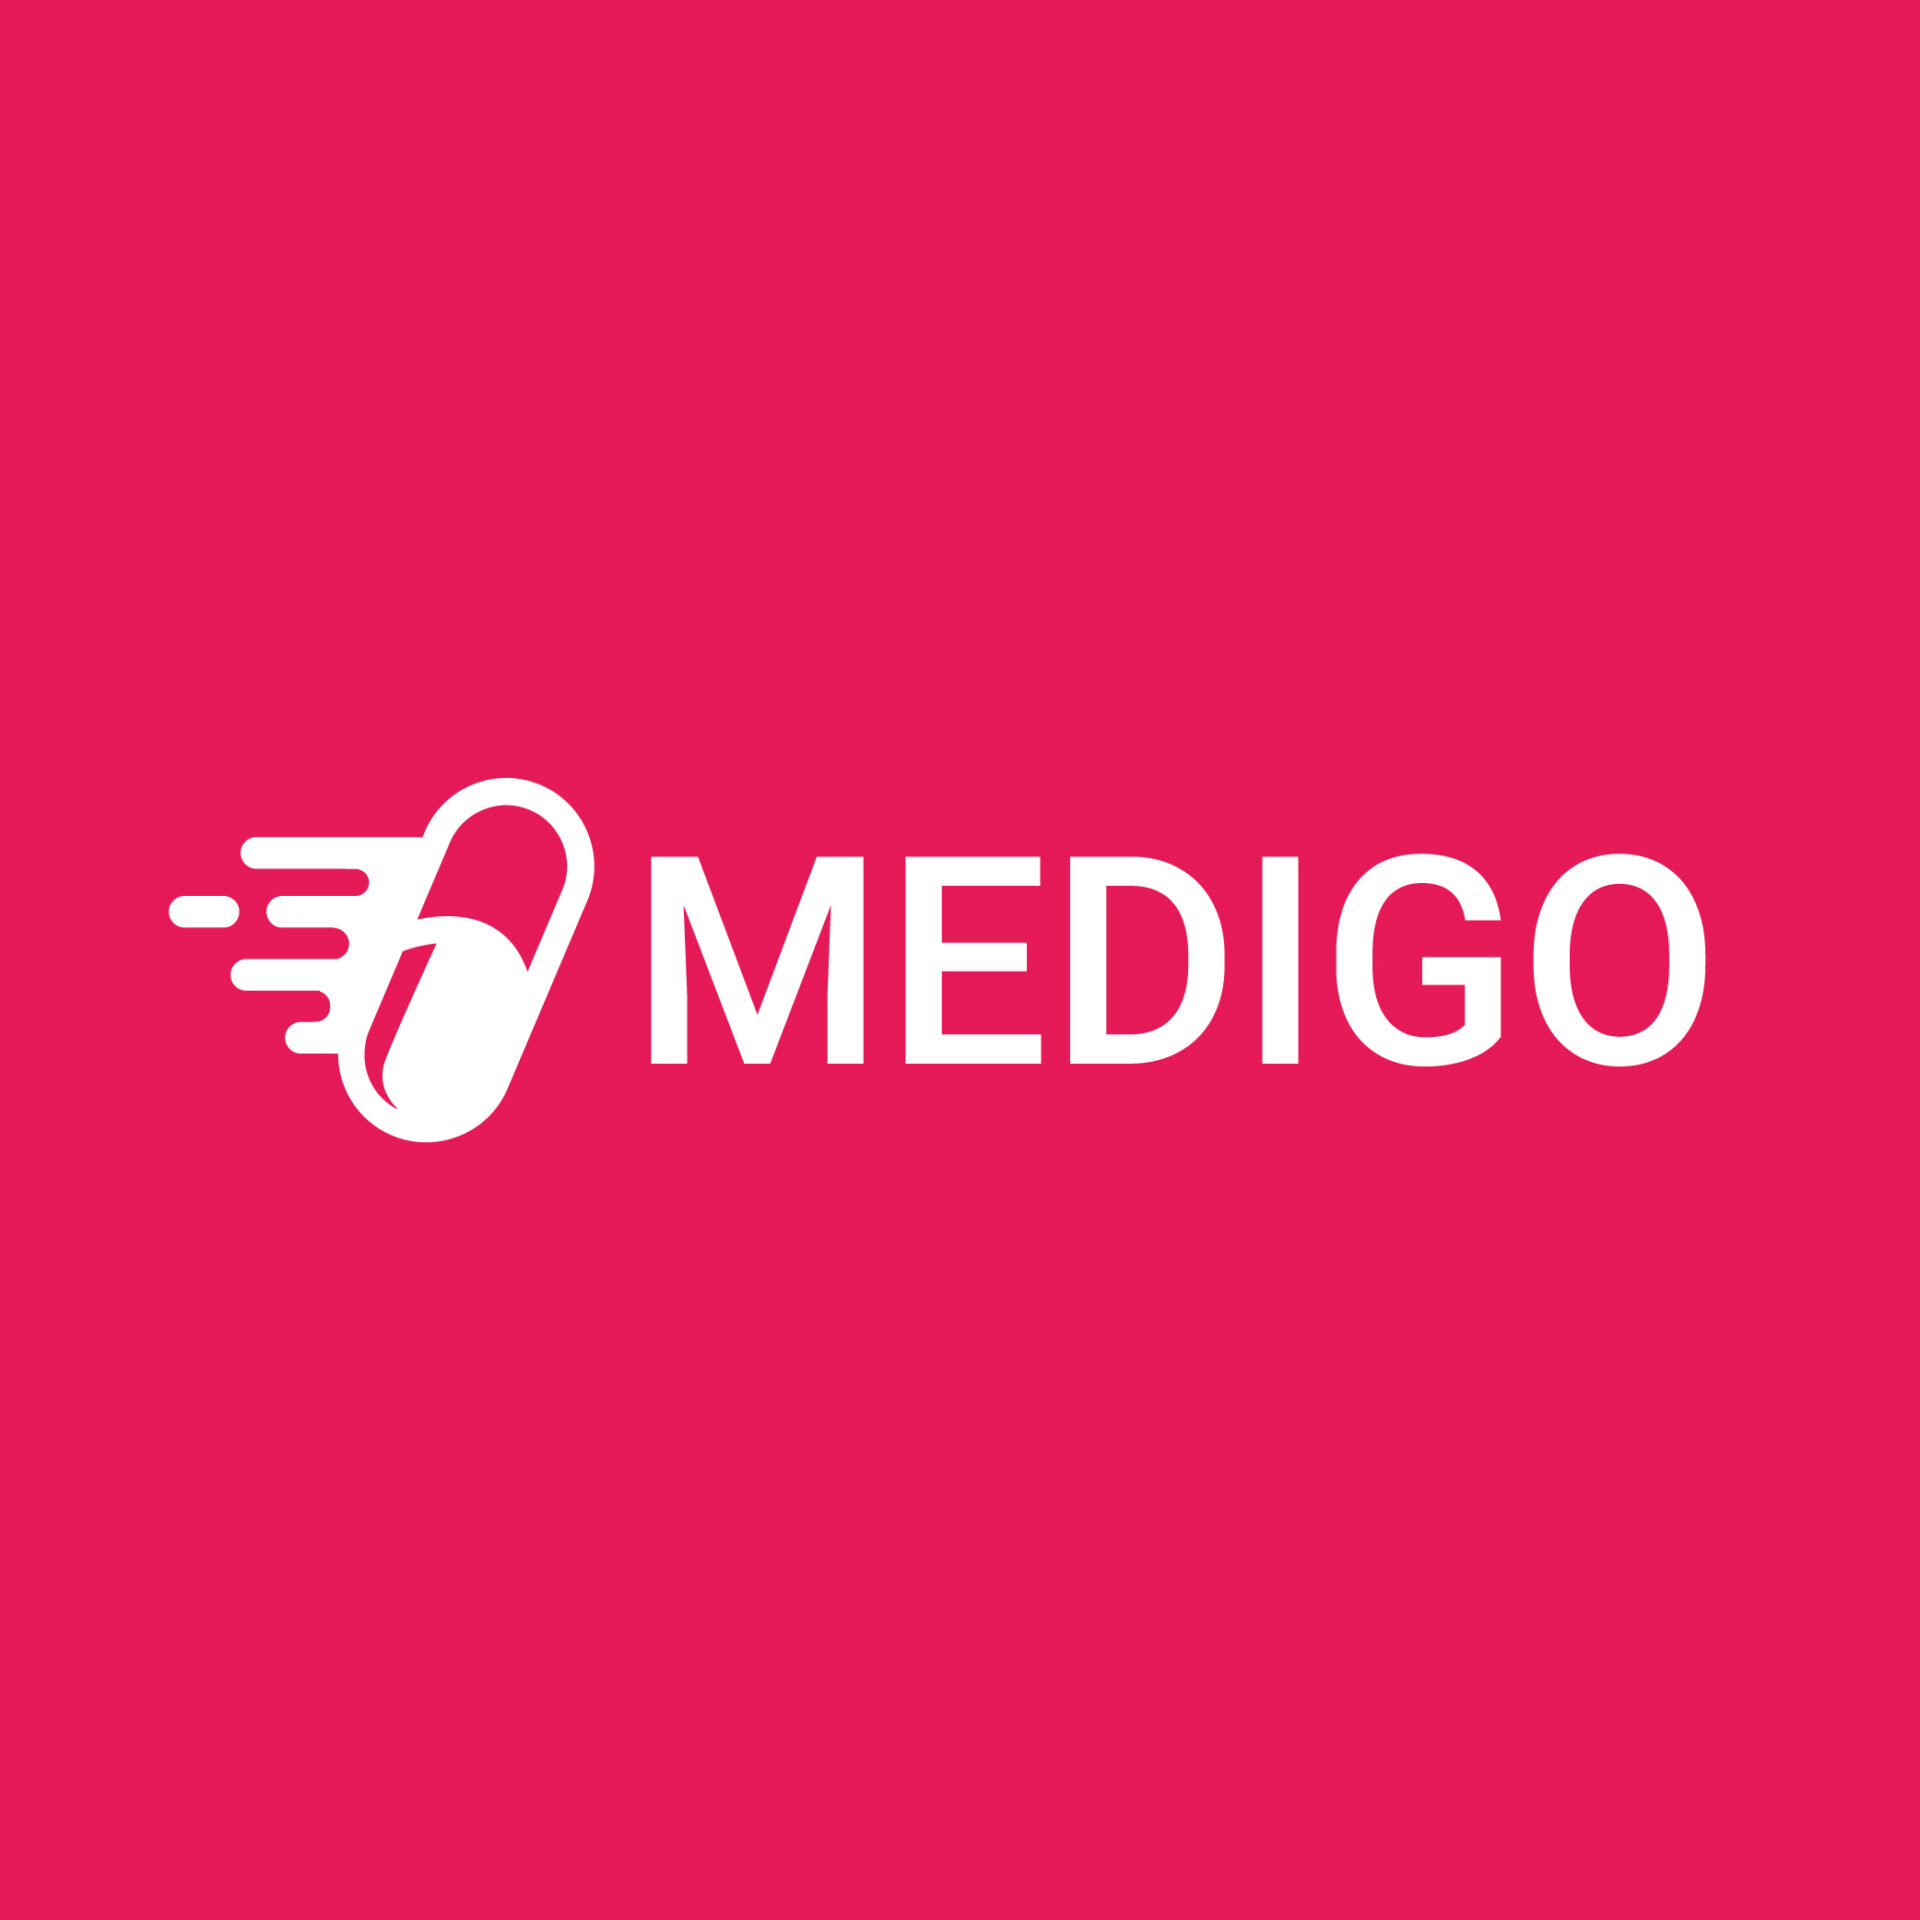 Medigo logo 02 scaled